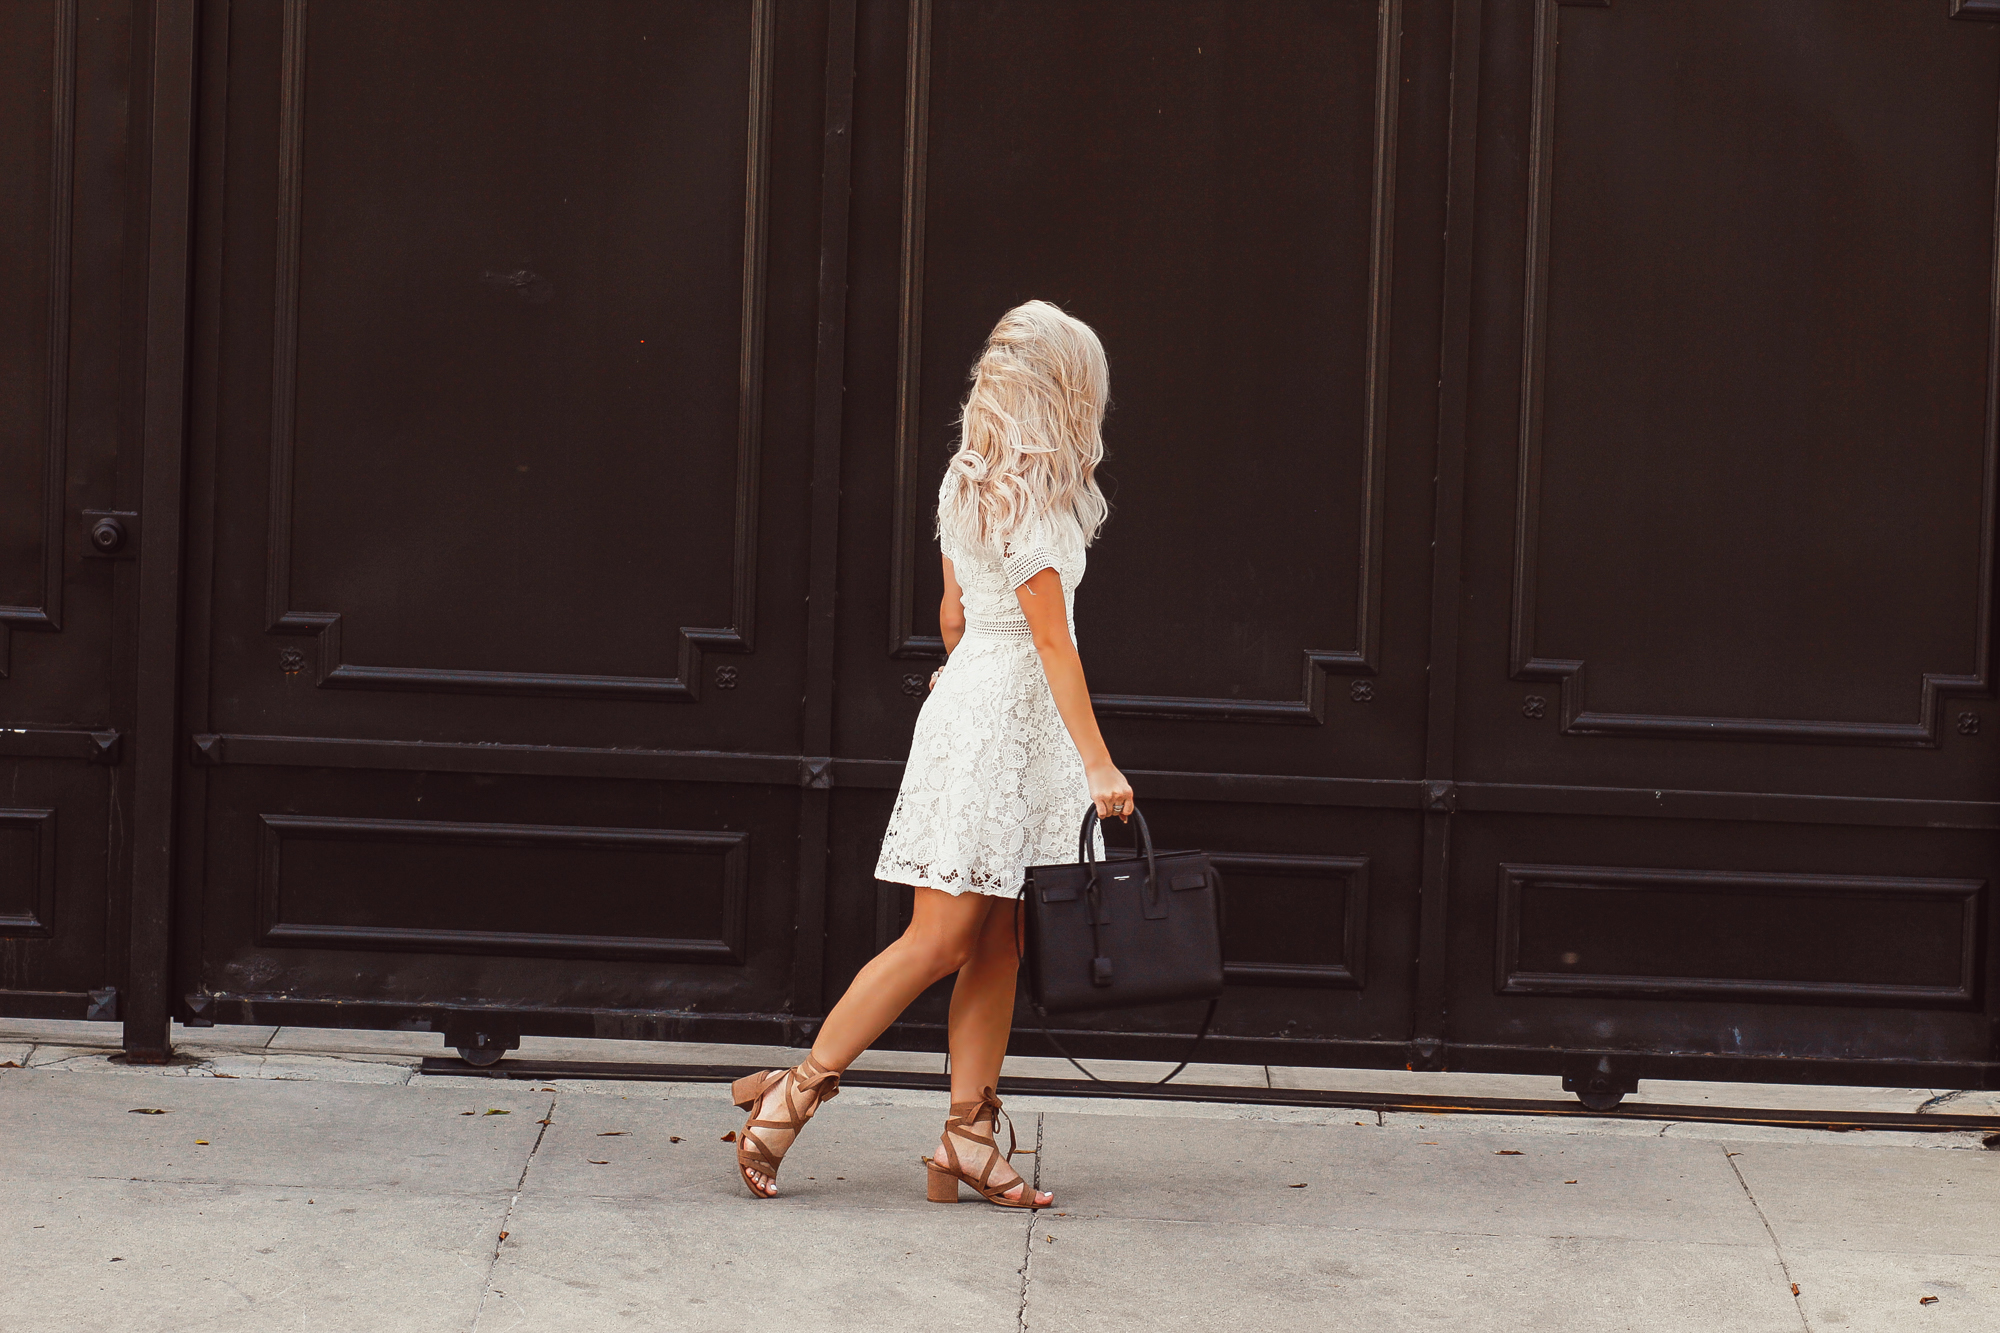 Blondie in the City | White Lace Bridal Shower Dress @chiciwsh | YSL Bag | Saint Laurent Sac De Jour Bag